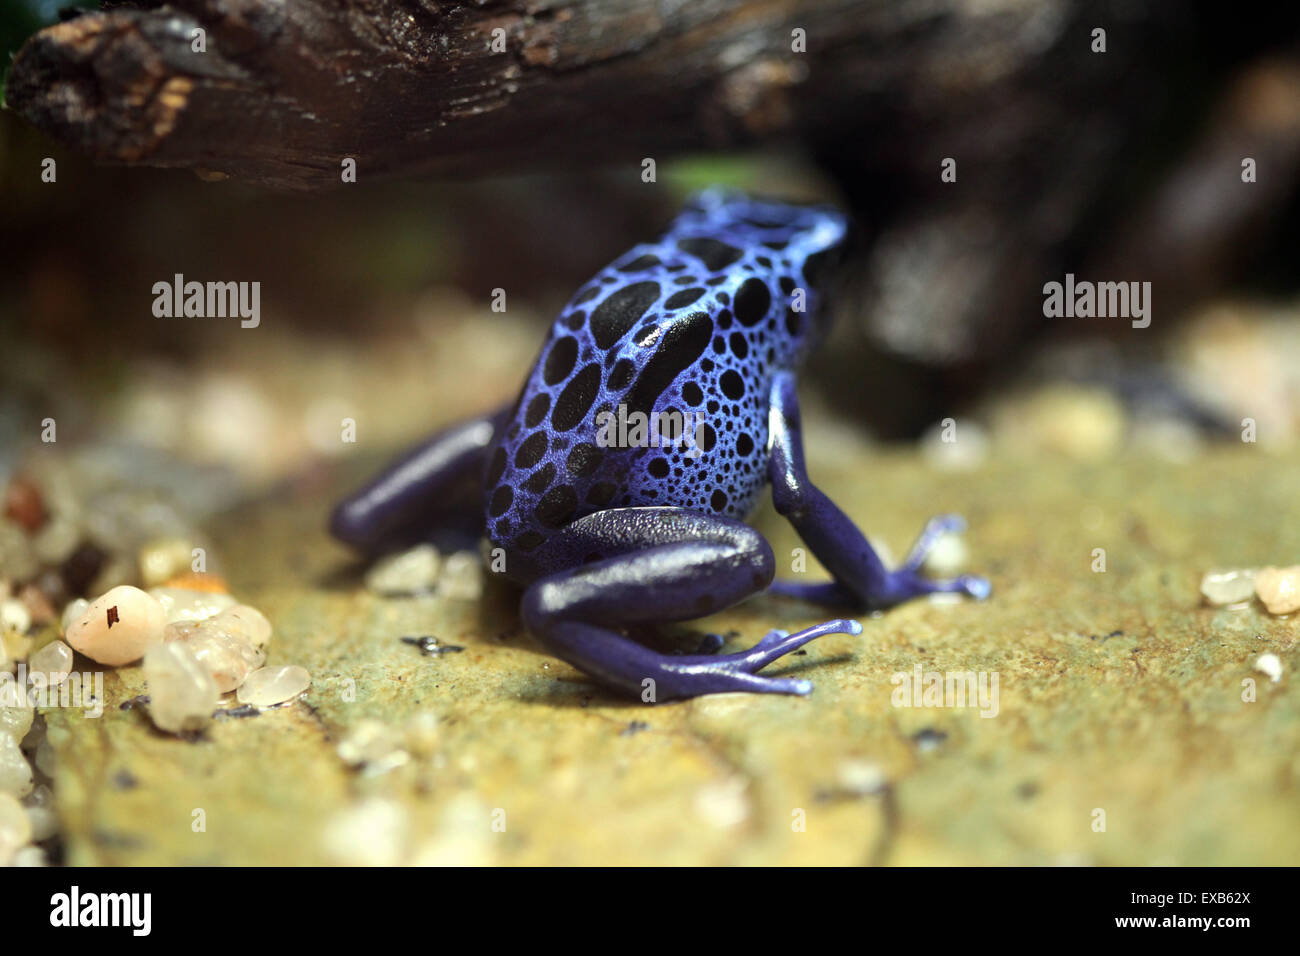 Blue poison dart frog (Dentrobates azureus), également connu sous le nom de blue poison arrow frog à Usti nad Labem Zoo, République tchèque. Banque D'Images